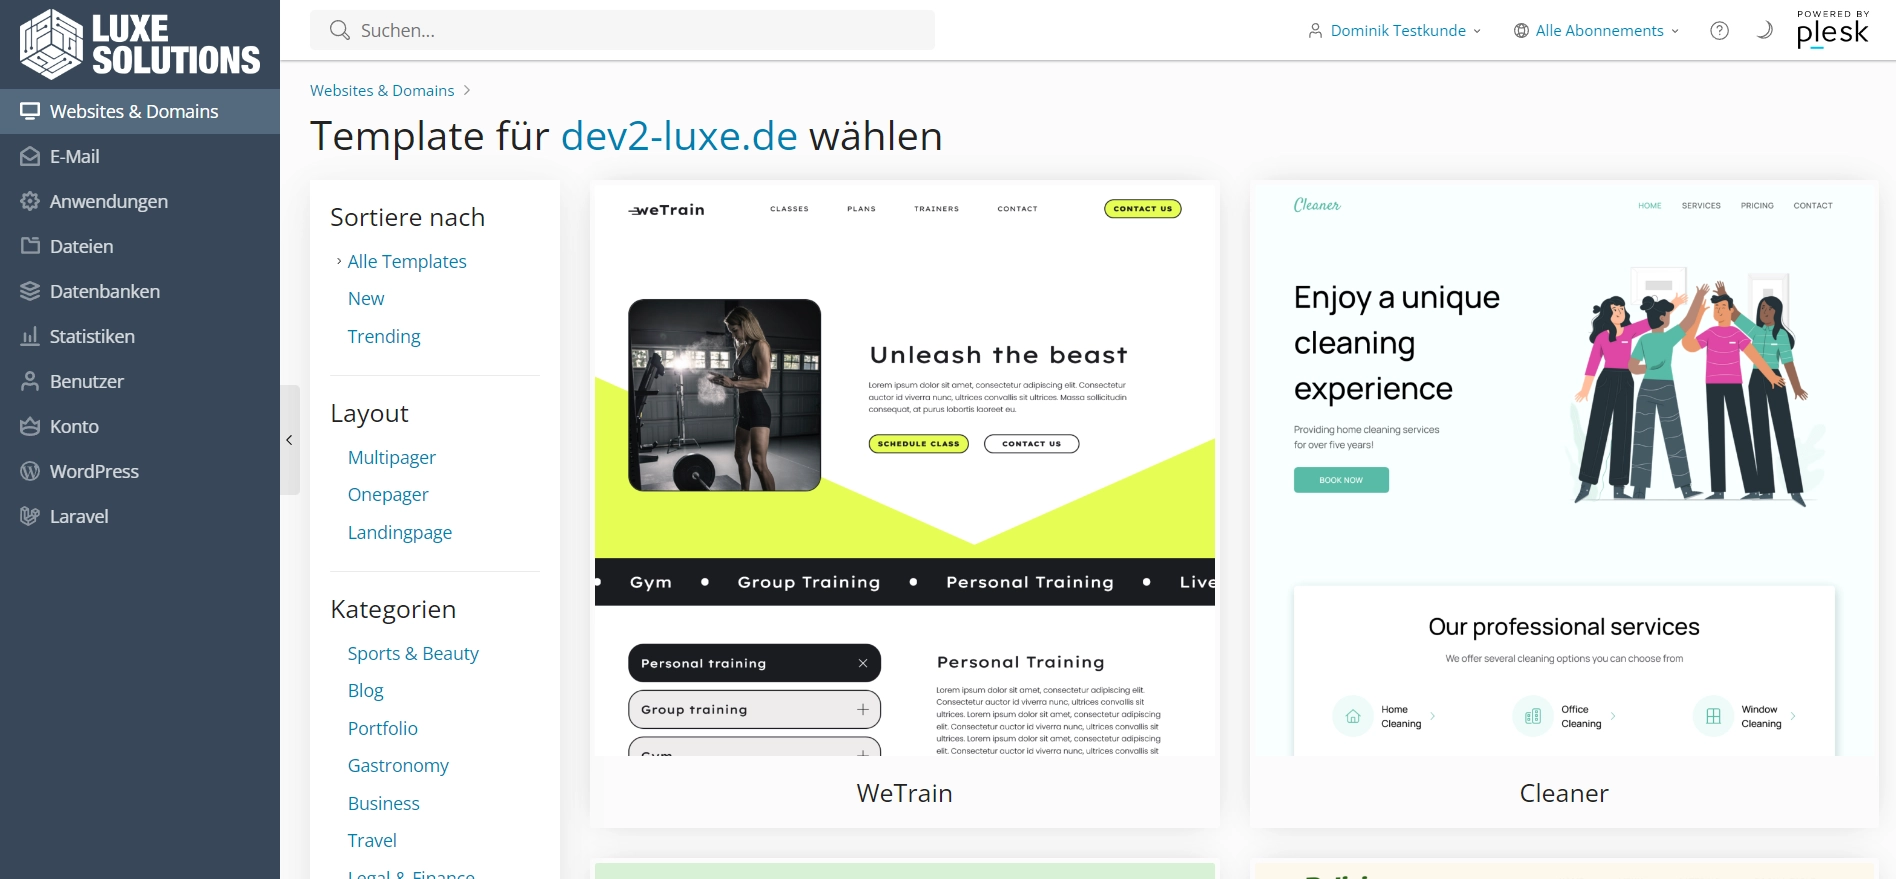 Luxe-Solutions Website builder